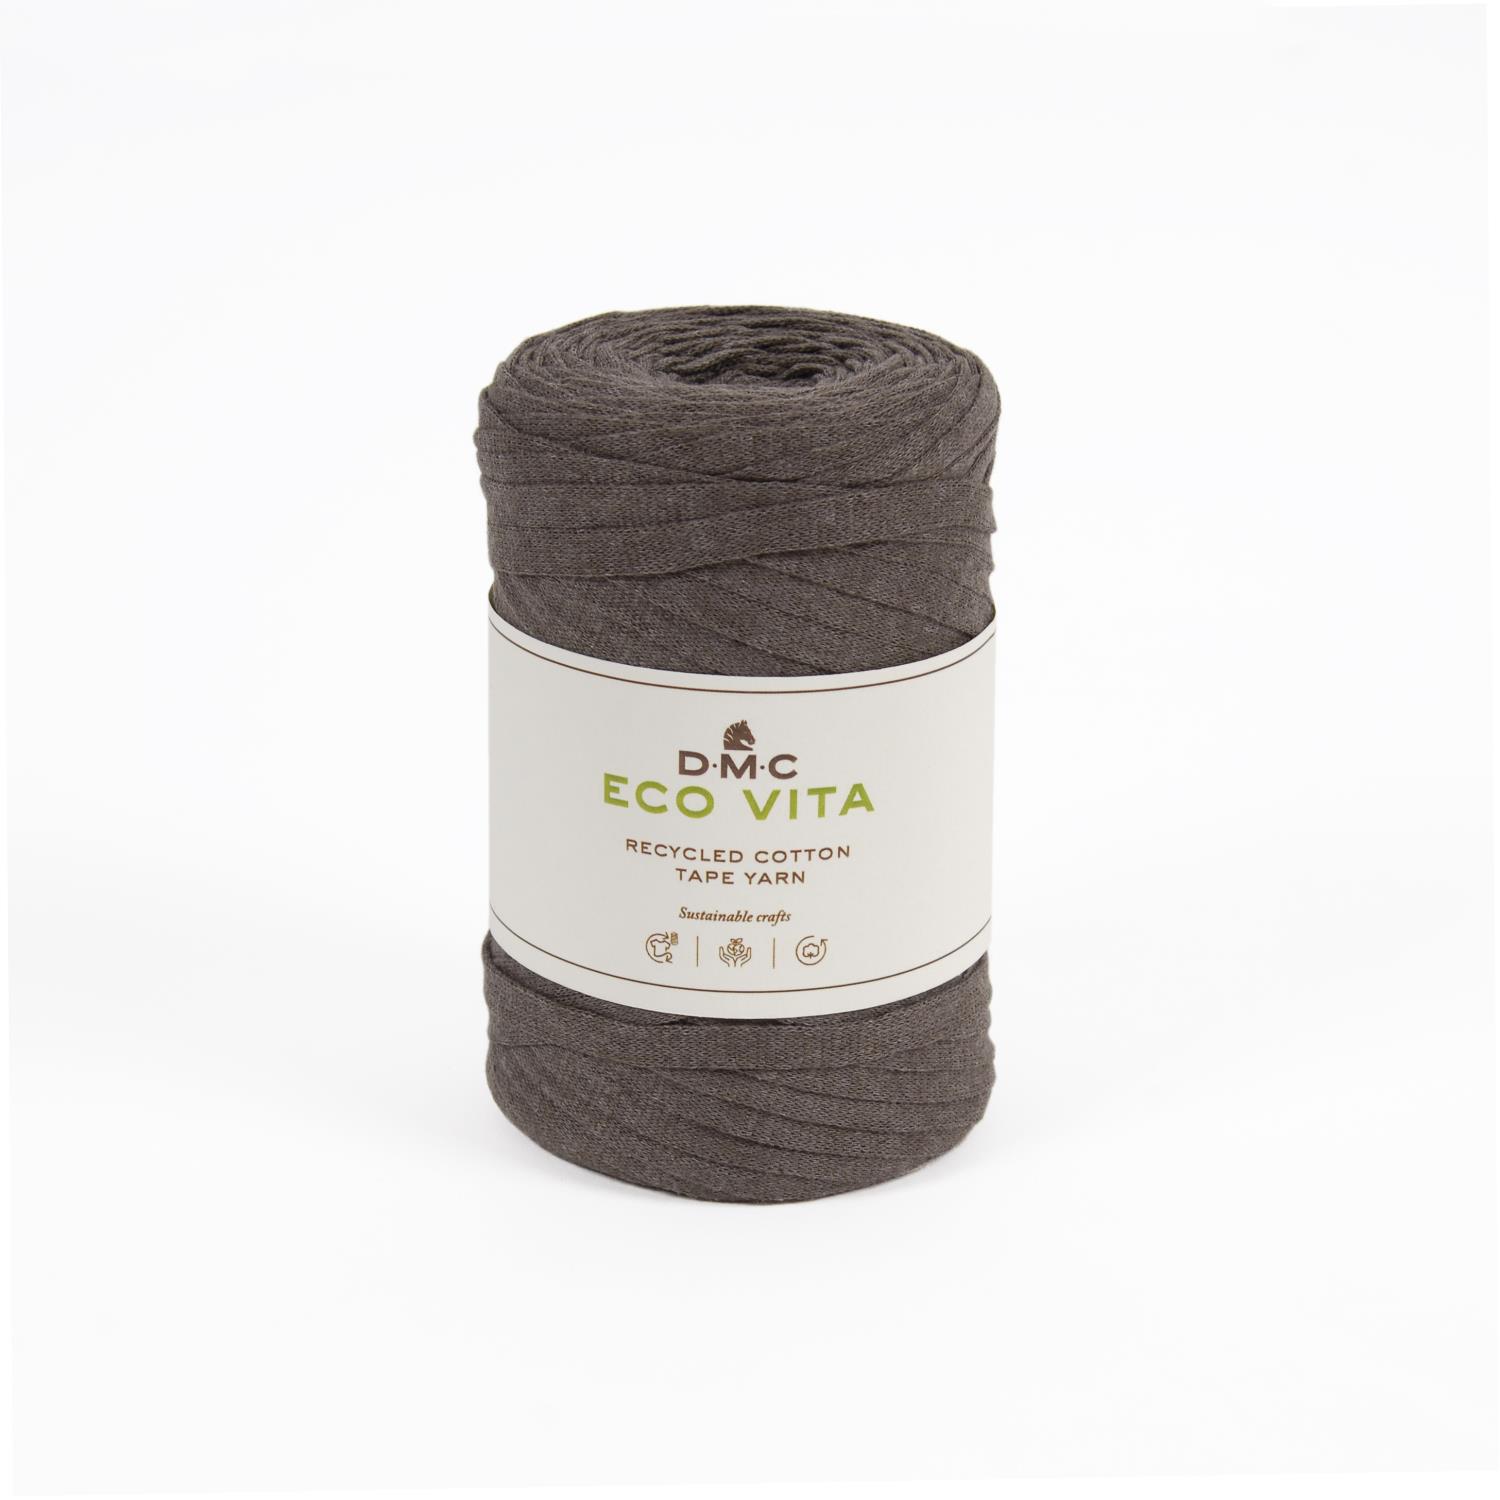 DMC Eco vita tape yarn - 011 lysbrun